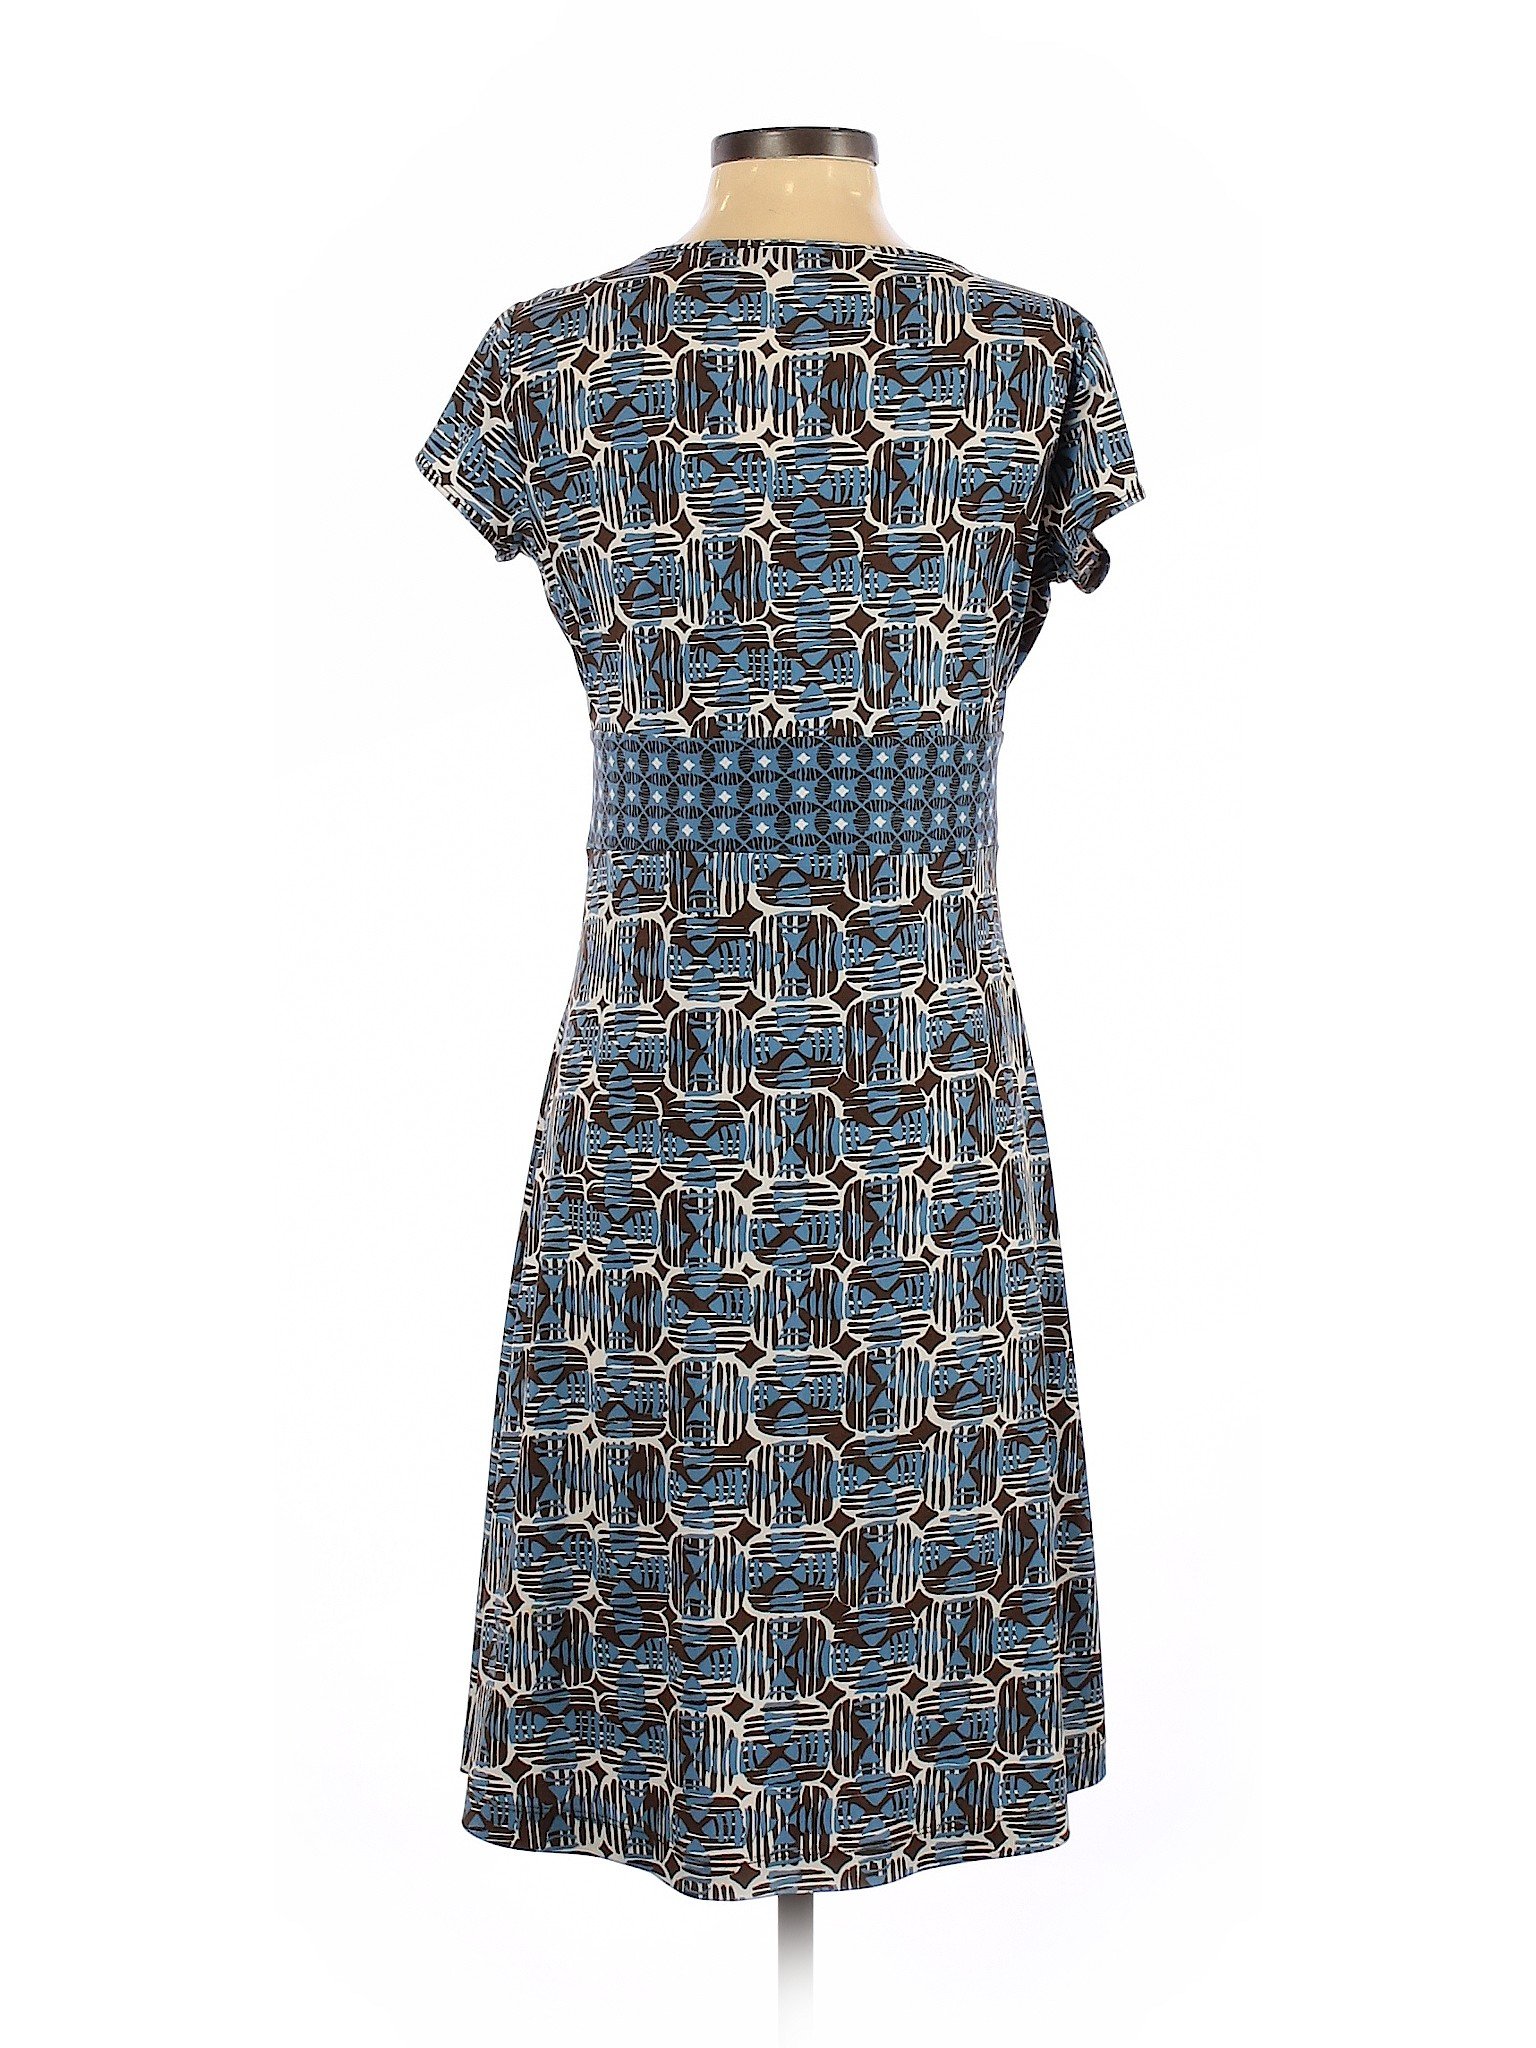 Axcess Women Blue Casual Dress S | eBay